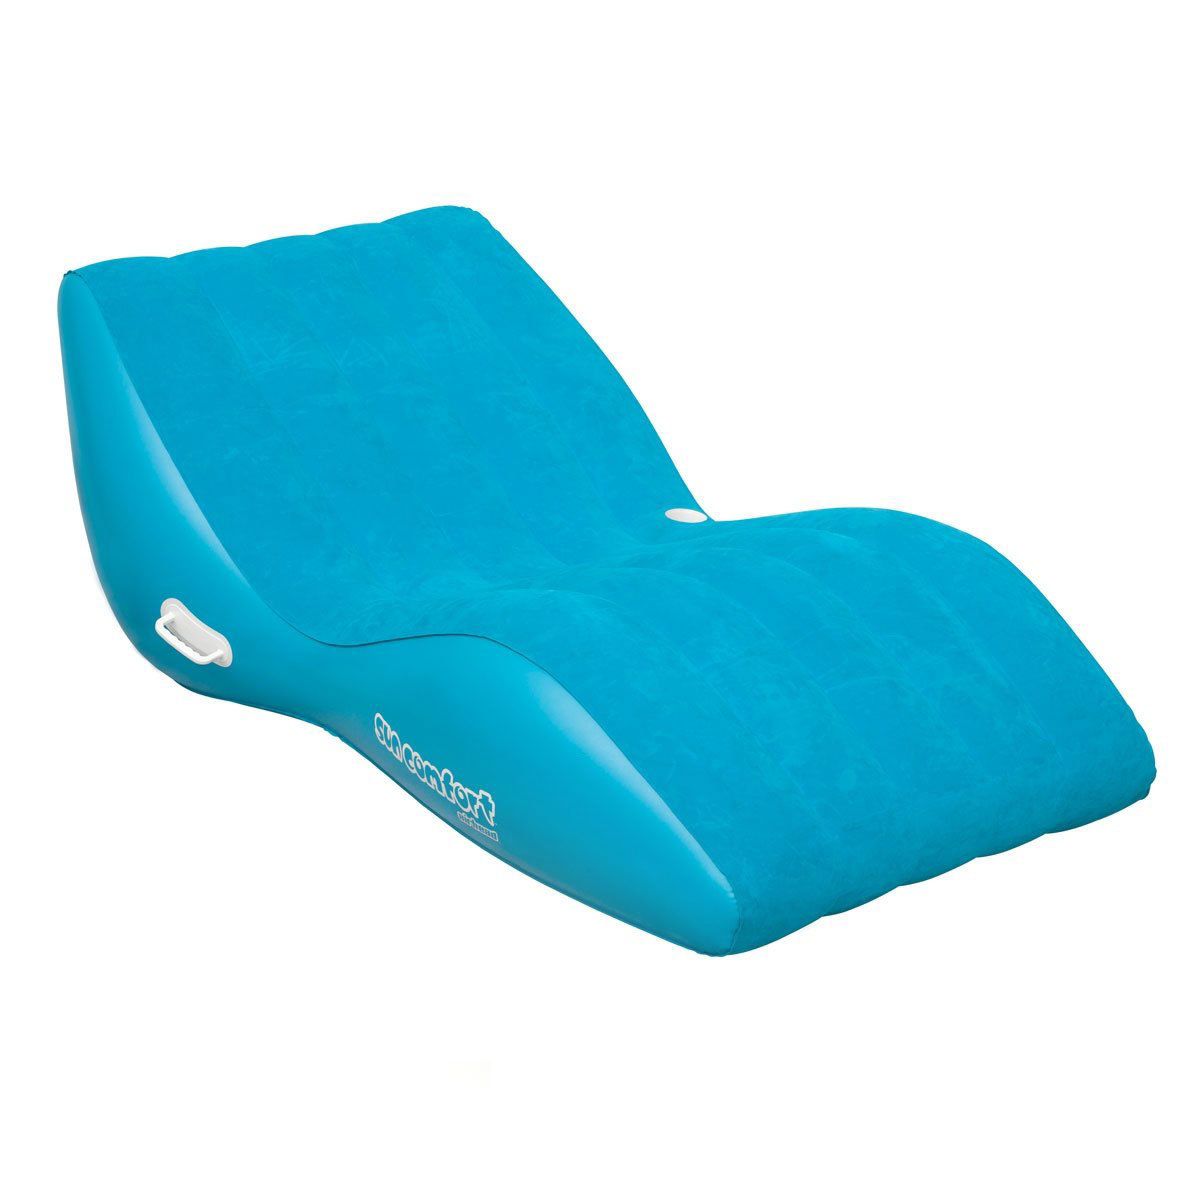 Поплавок для бассейна Airhead Sun Comfort Suede Zero Gravity, цвет сапфировый синий Airhead